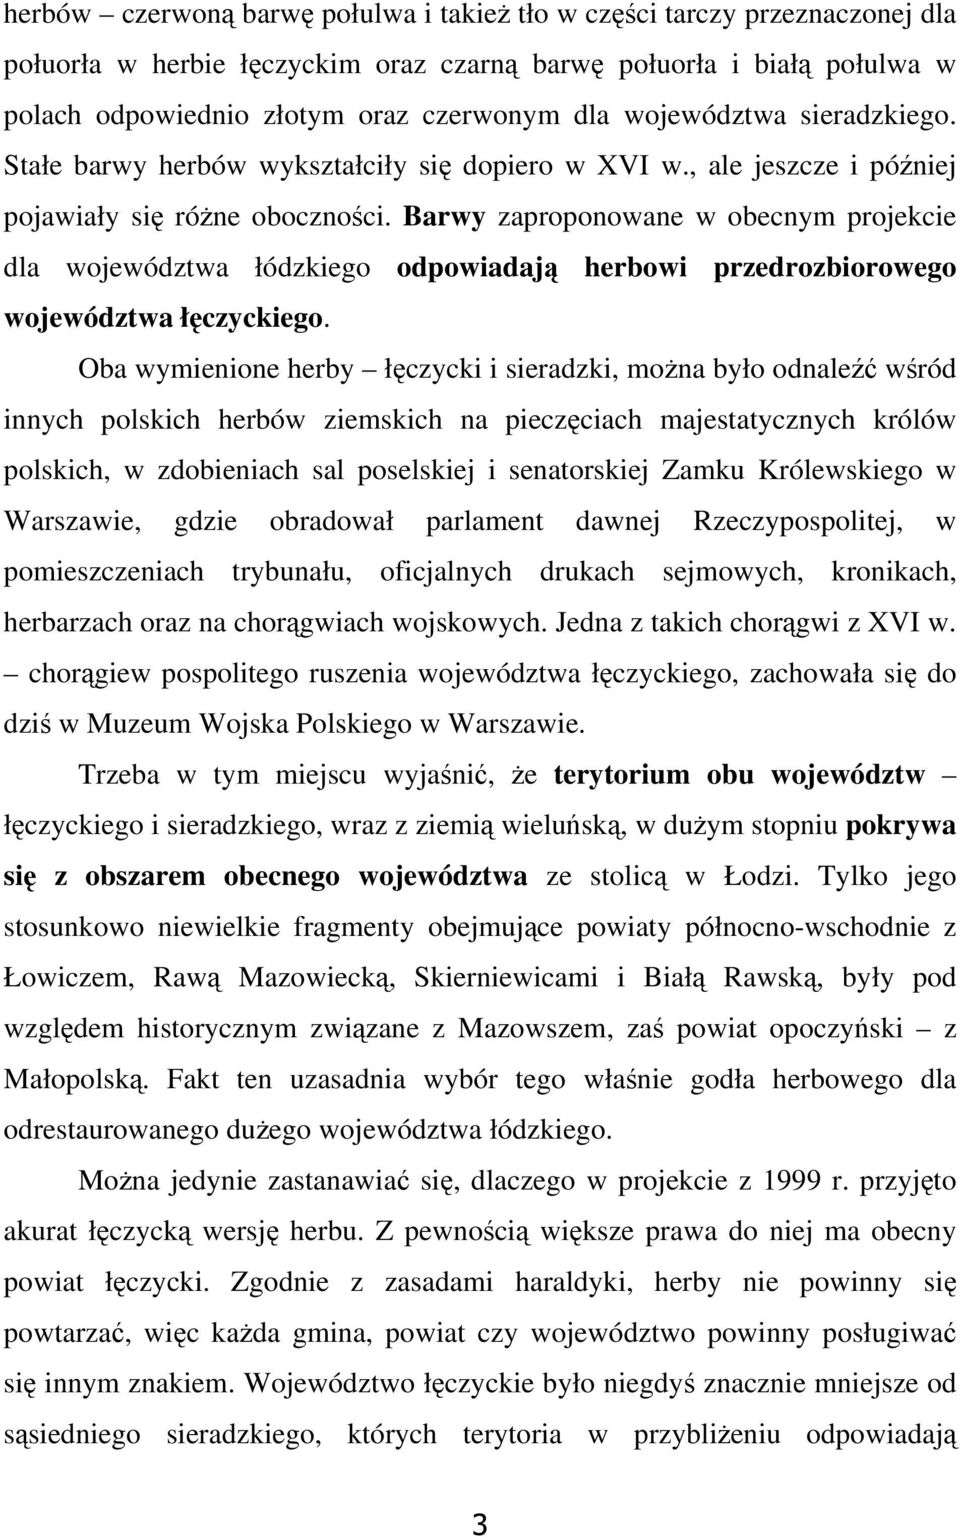 Barwy zaproponowane w obecnym projekcie dla województwa łódzkiego odpowiadają herbowi przedrozbiorowego województwa łęczyckiego.